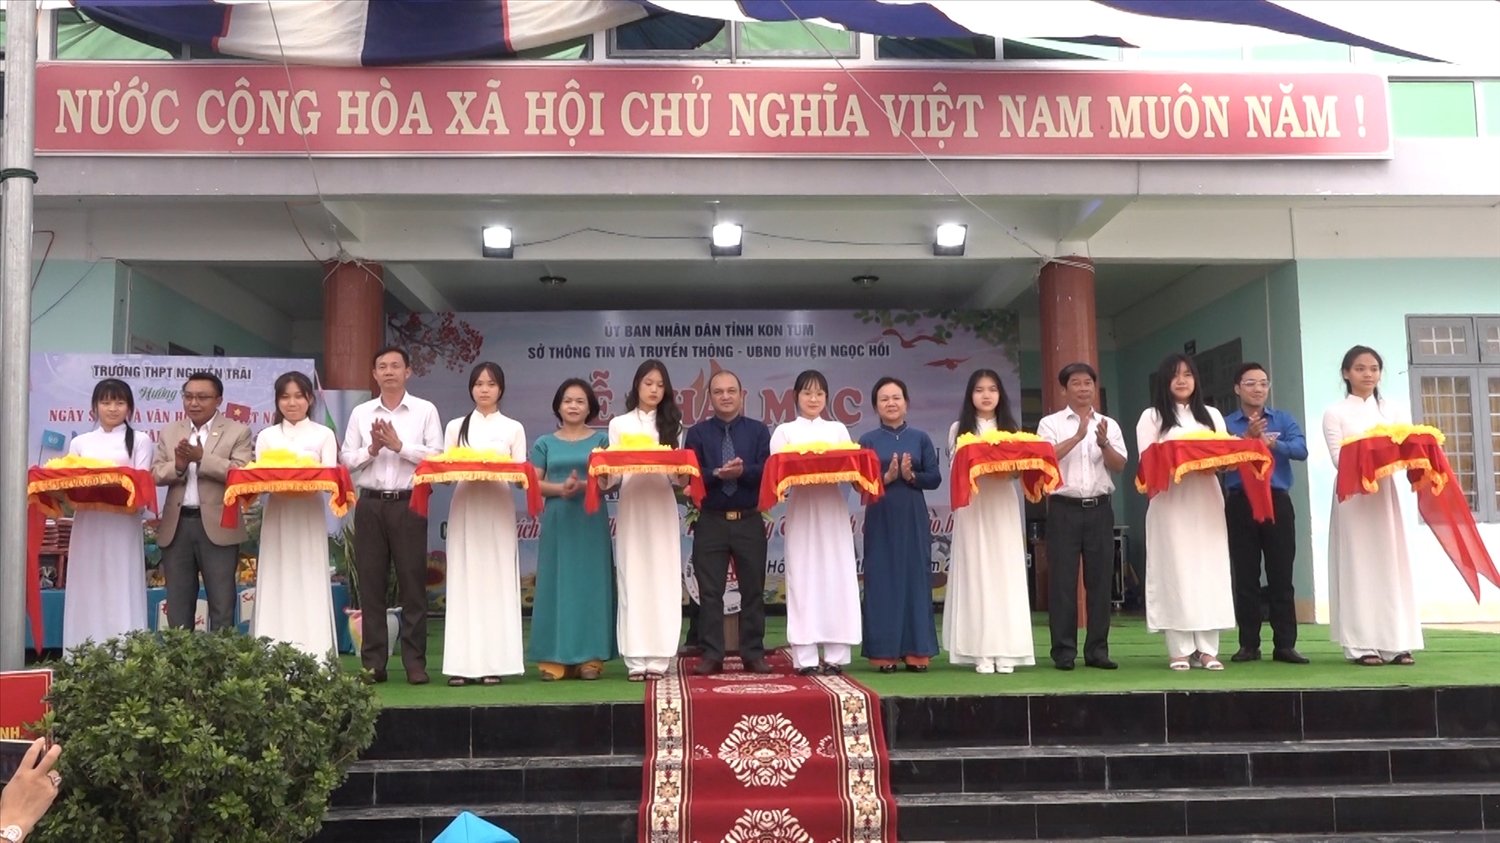 Các đại biểu cắt băng khai mạc Ngày sách và Văn hóa đọc Việt Nam 